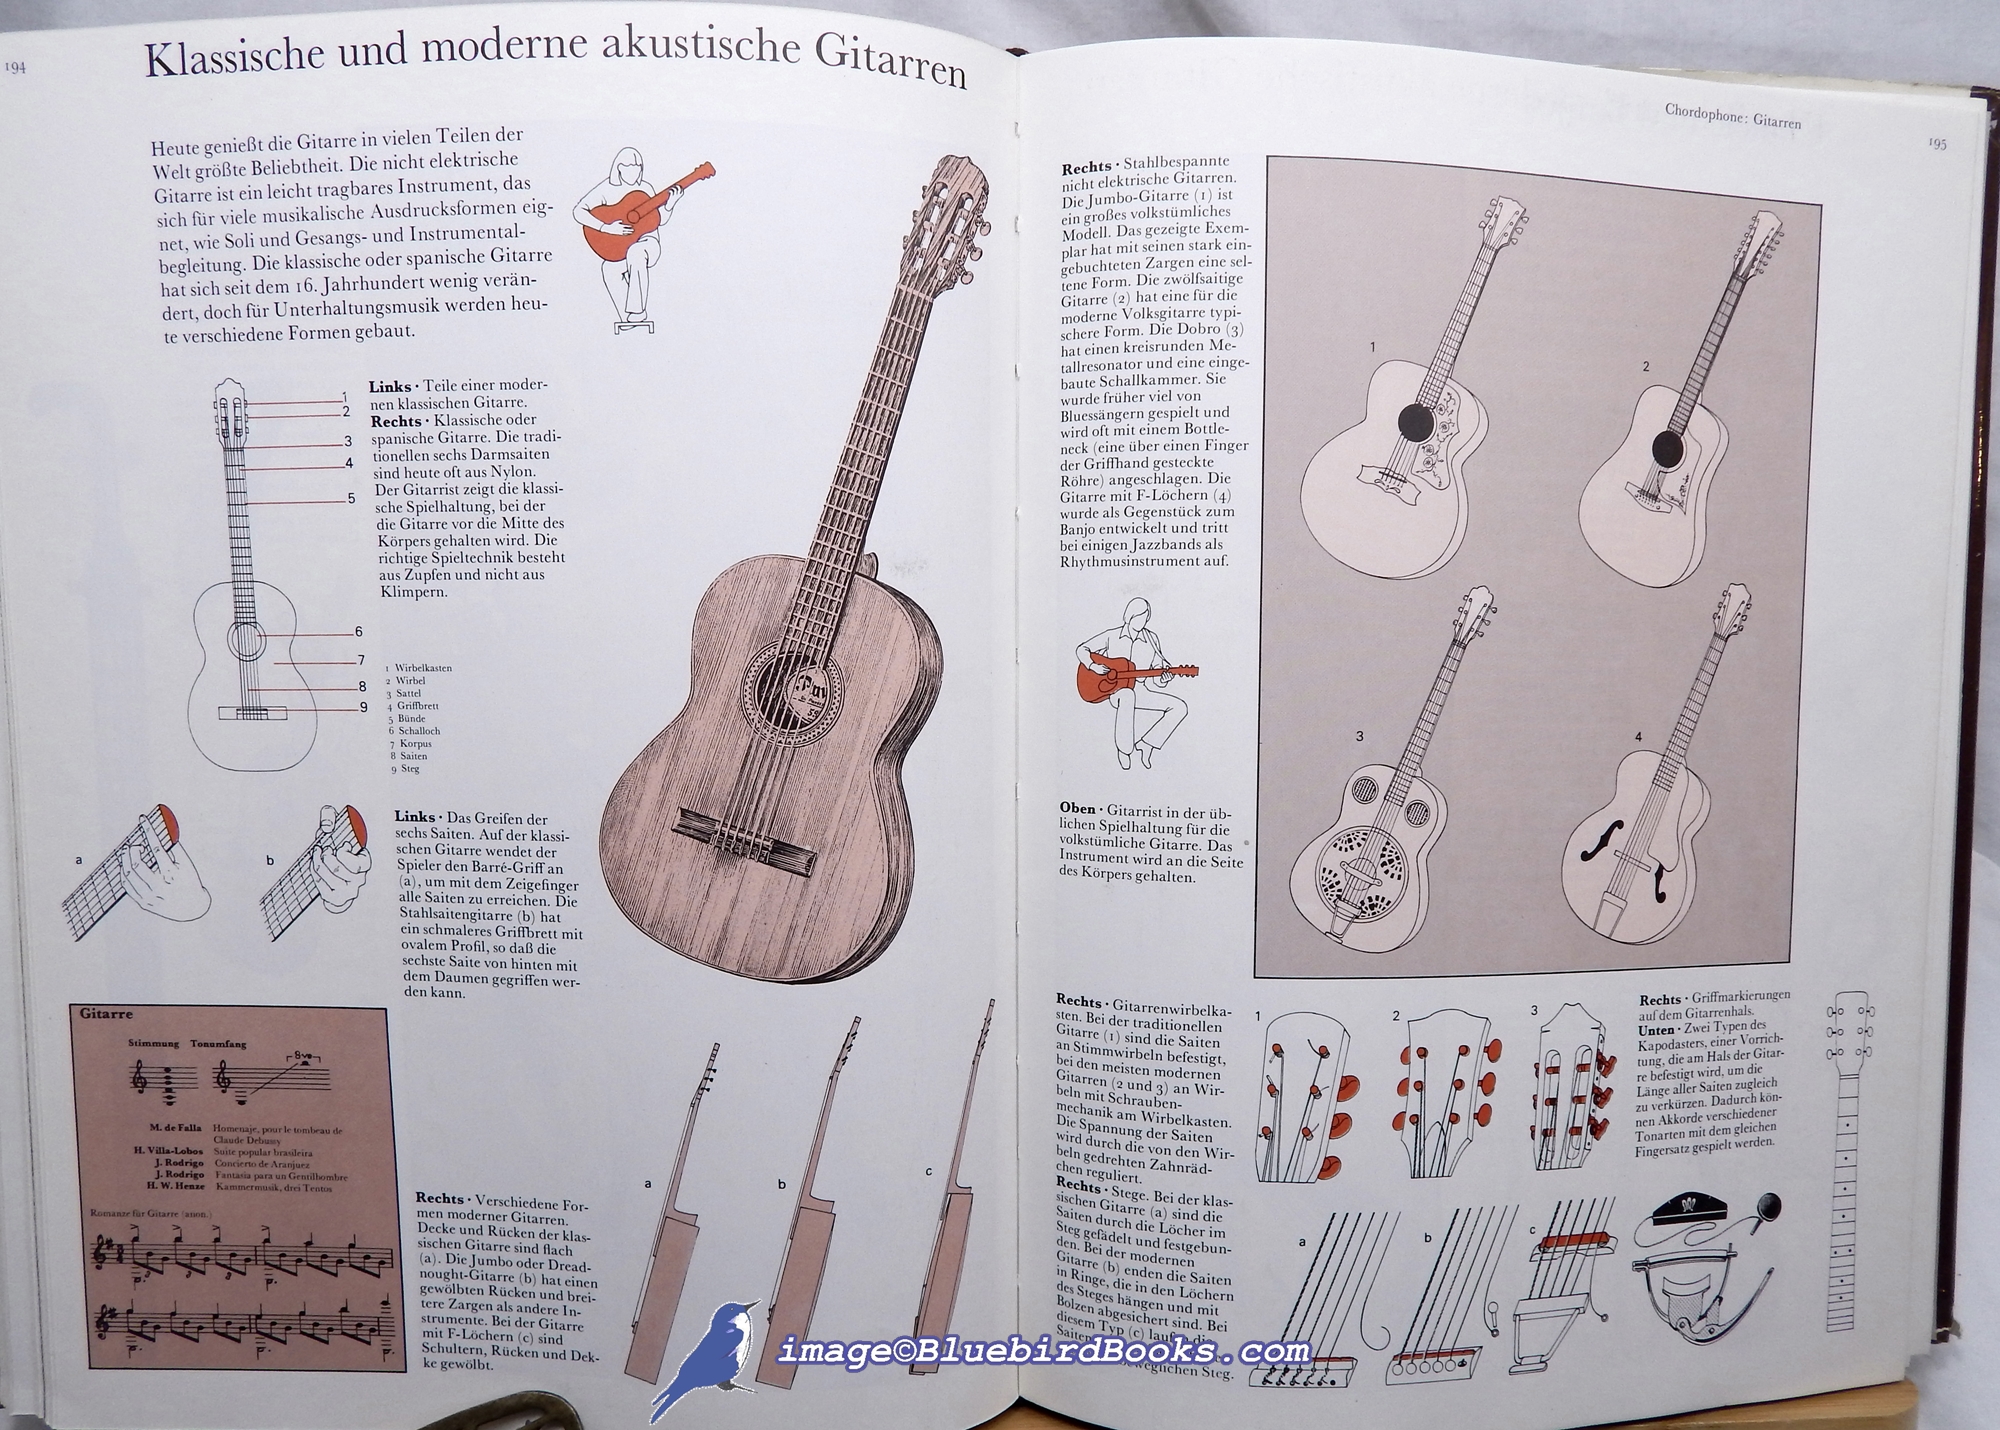 MIDGLEY, RUTH (EDITORIAL MANAGER) - Musikinstrumente Der Welt: Eine Enzyklopdie Mit ber 4000 Lllustrationen (Musical Instruments of the World, with over 4000 Illustrations)